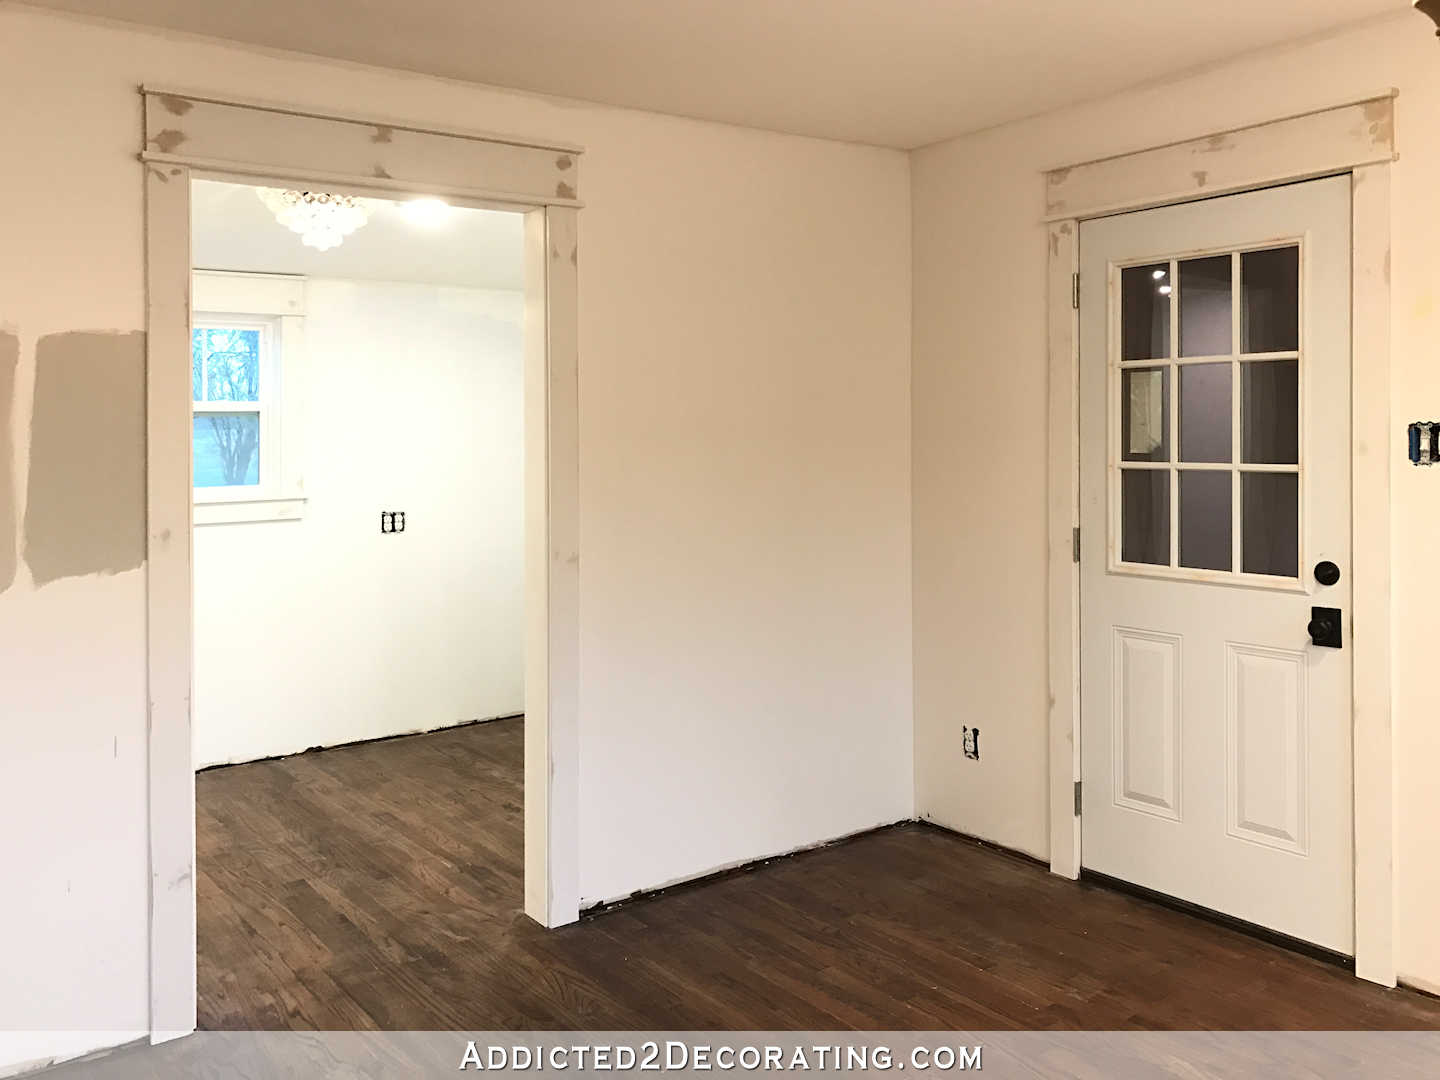 trim on pantry door, pantry window and garage door